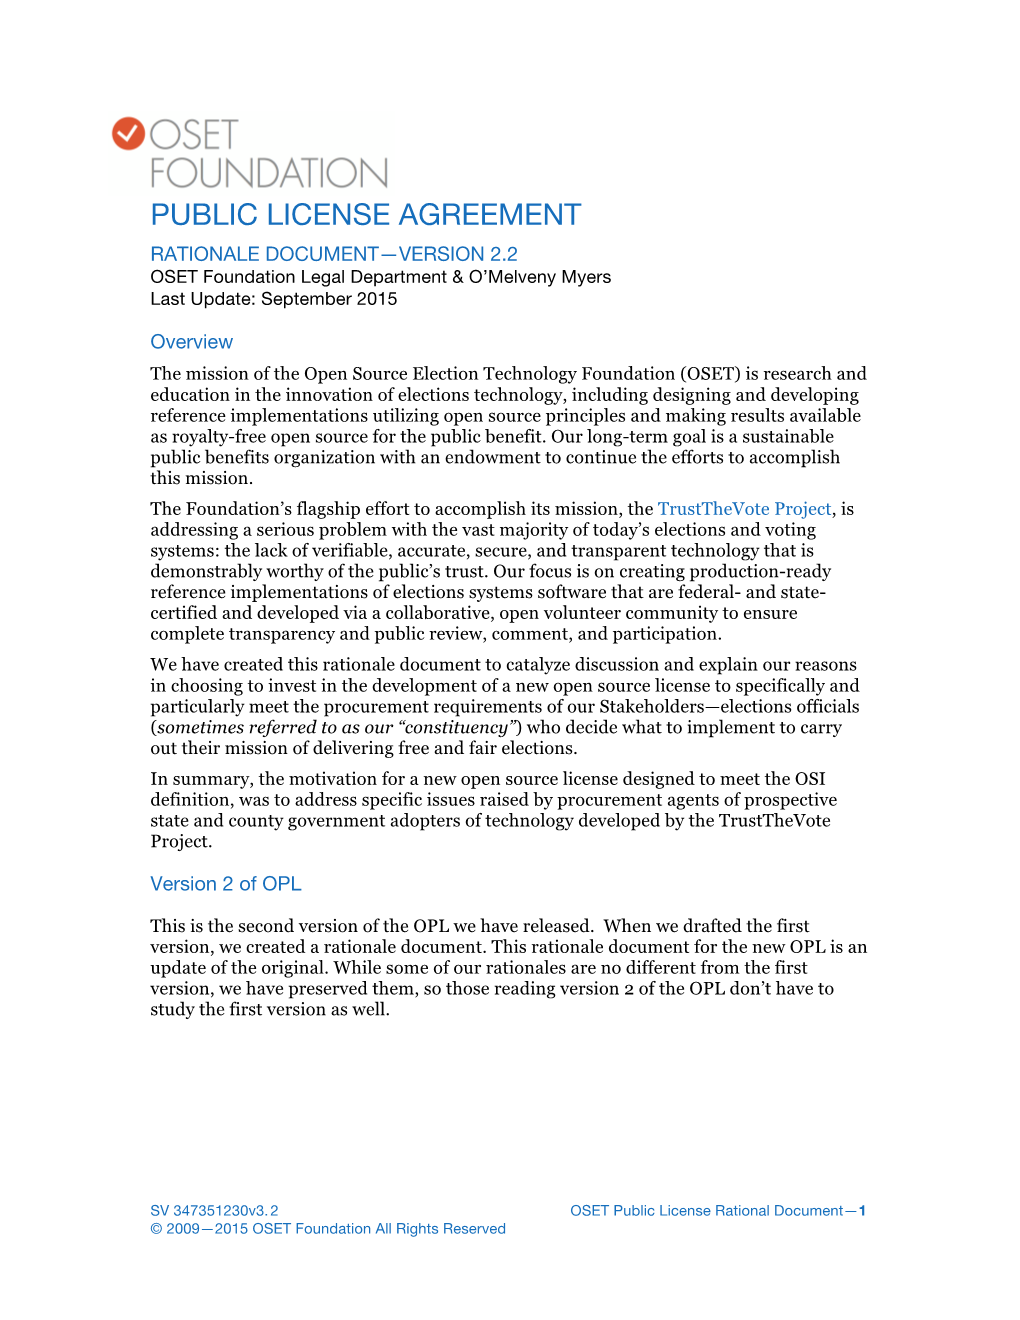 OSET Public License Rationale Document